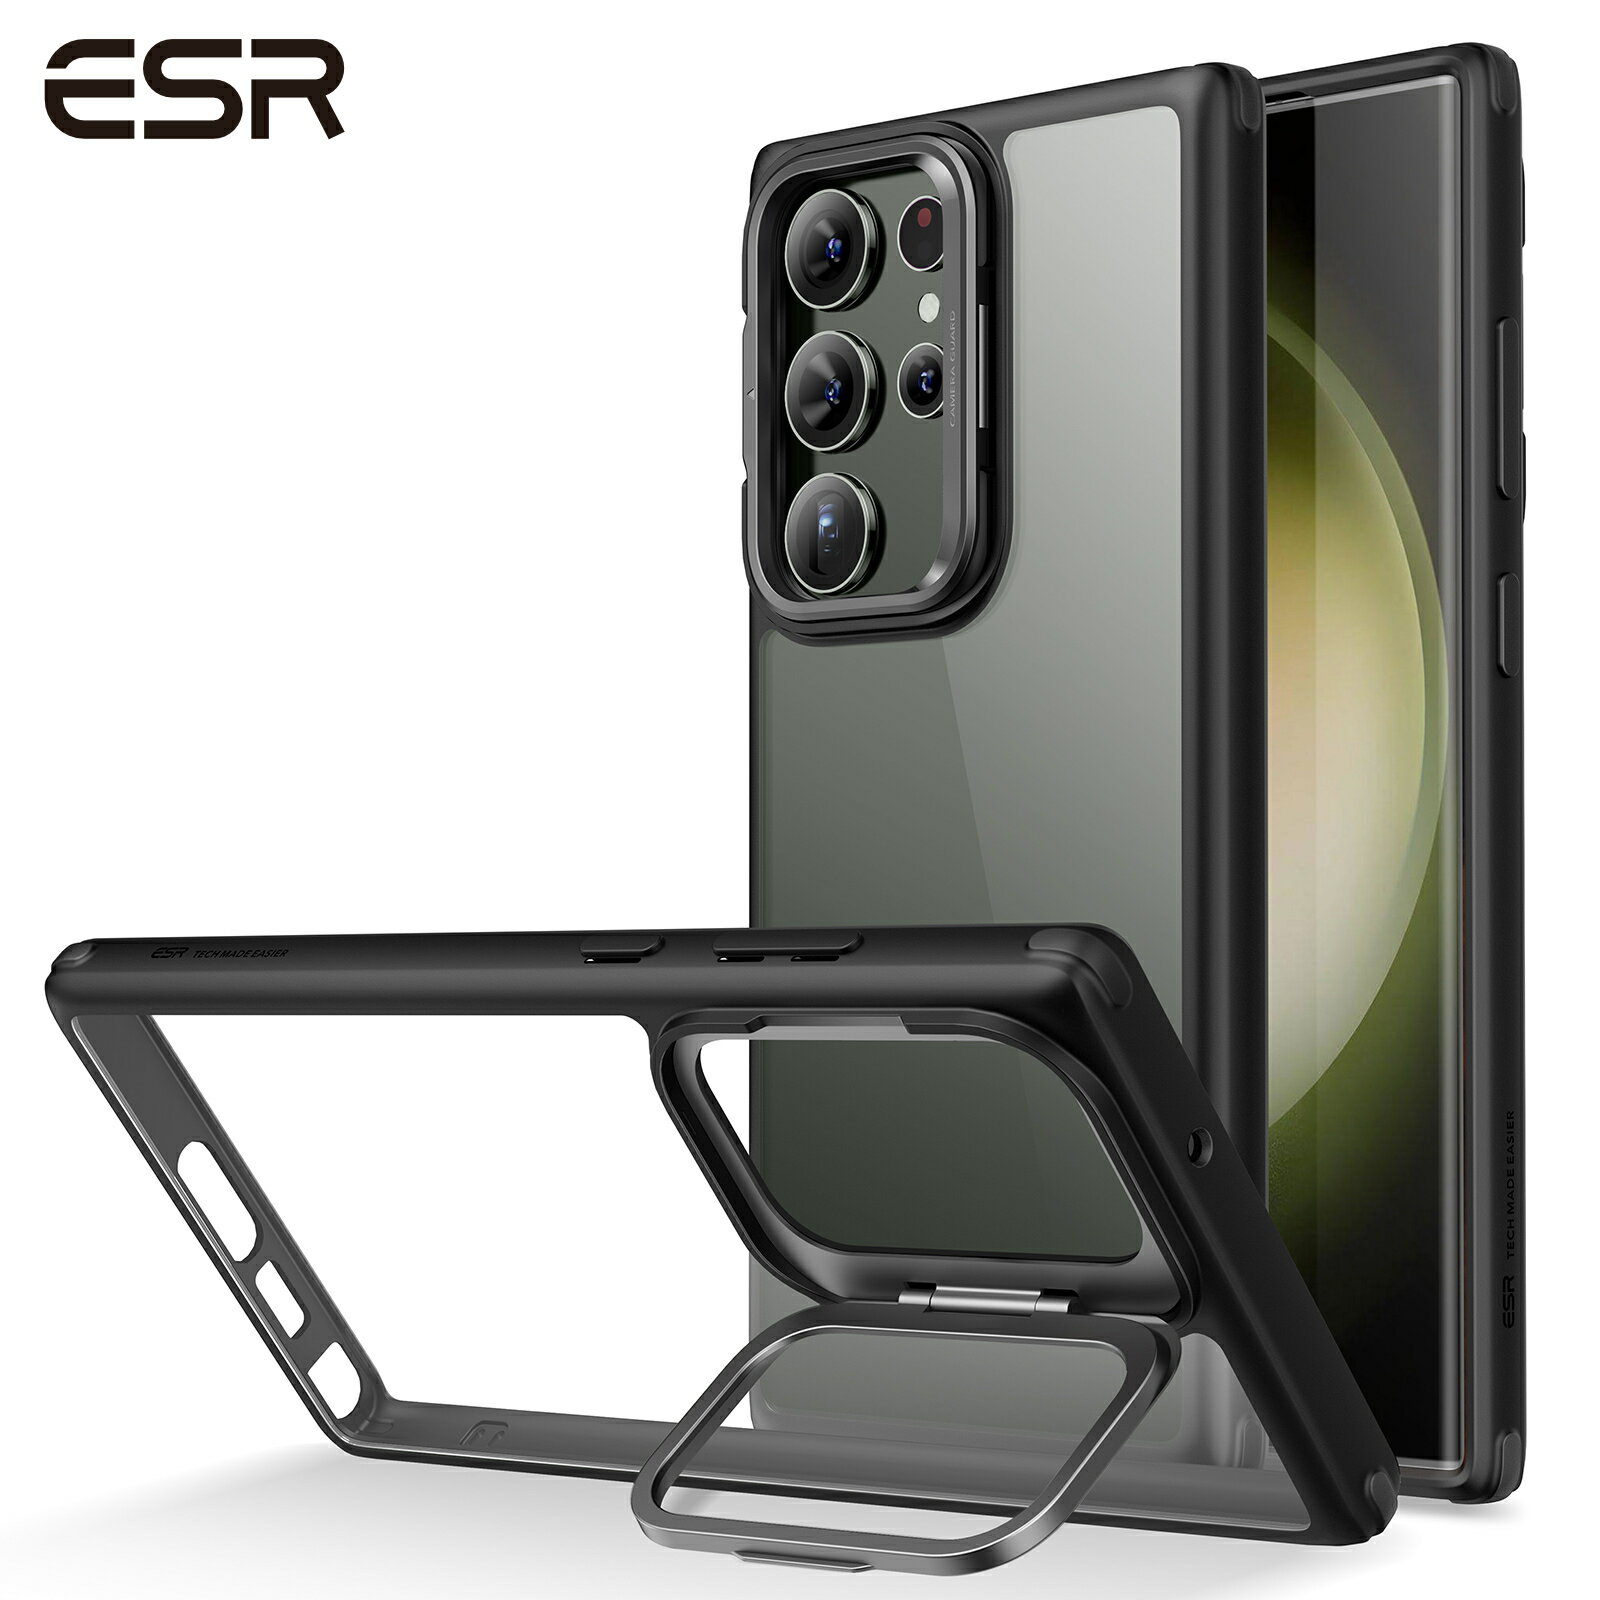 ESR Galaxy S23 / S23+ / S23 Ultra スタンドケース レンズスタンド内蔵 米軍MIL規格の落下防止 ワイヤレス充電対応 スリム スタンド付き クリアーブラック おしゃれ かわいい Classic Kickstand Case